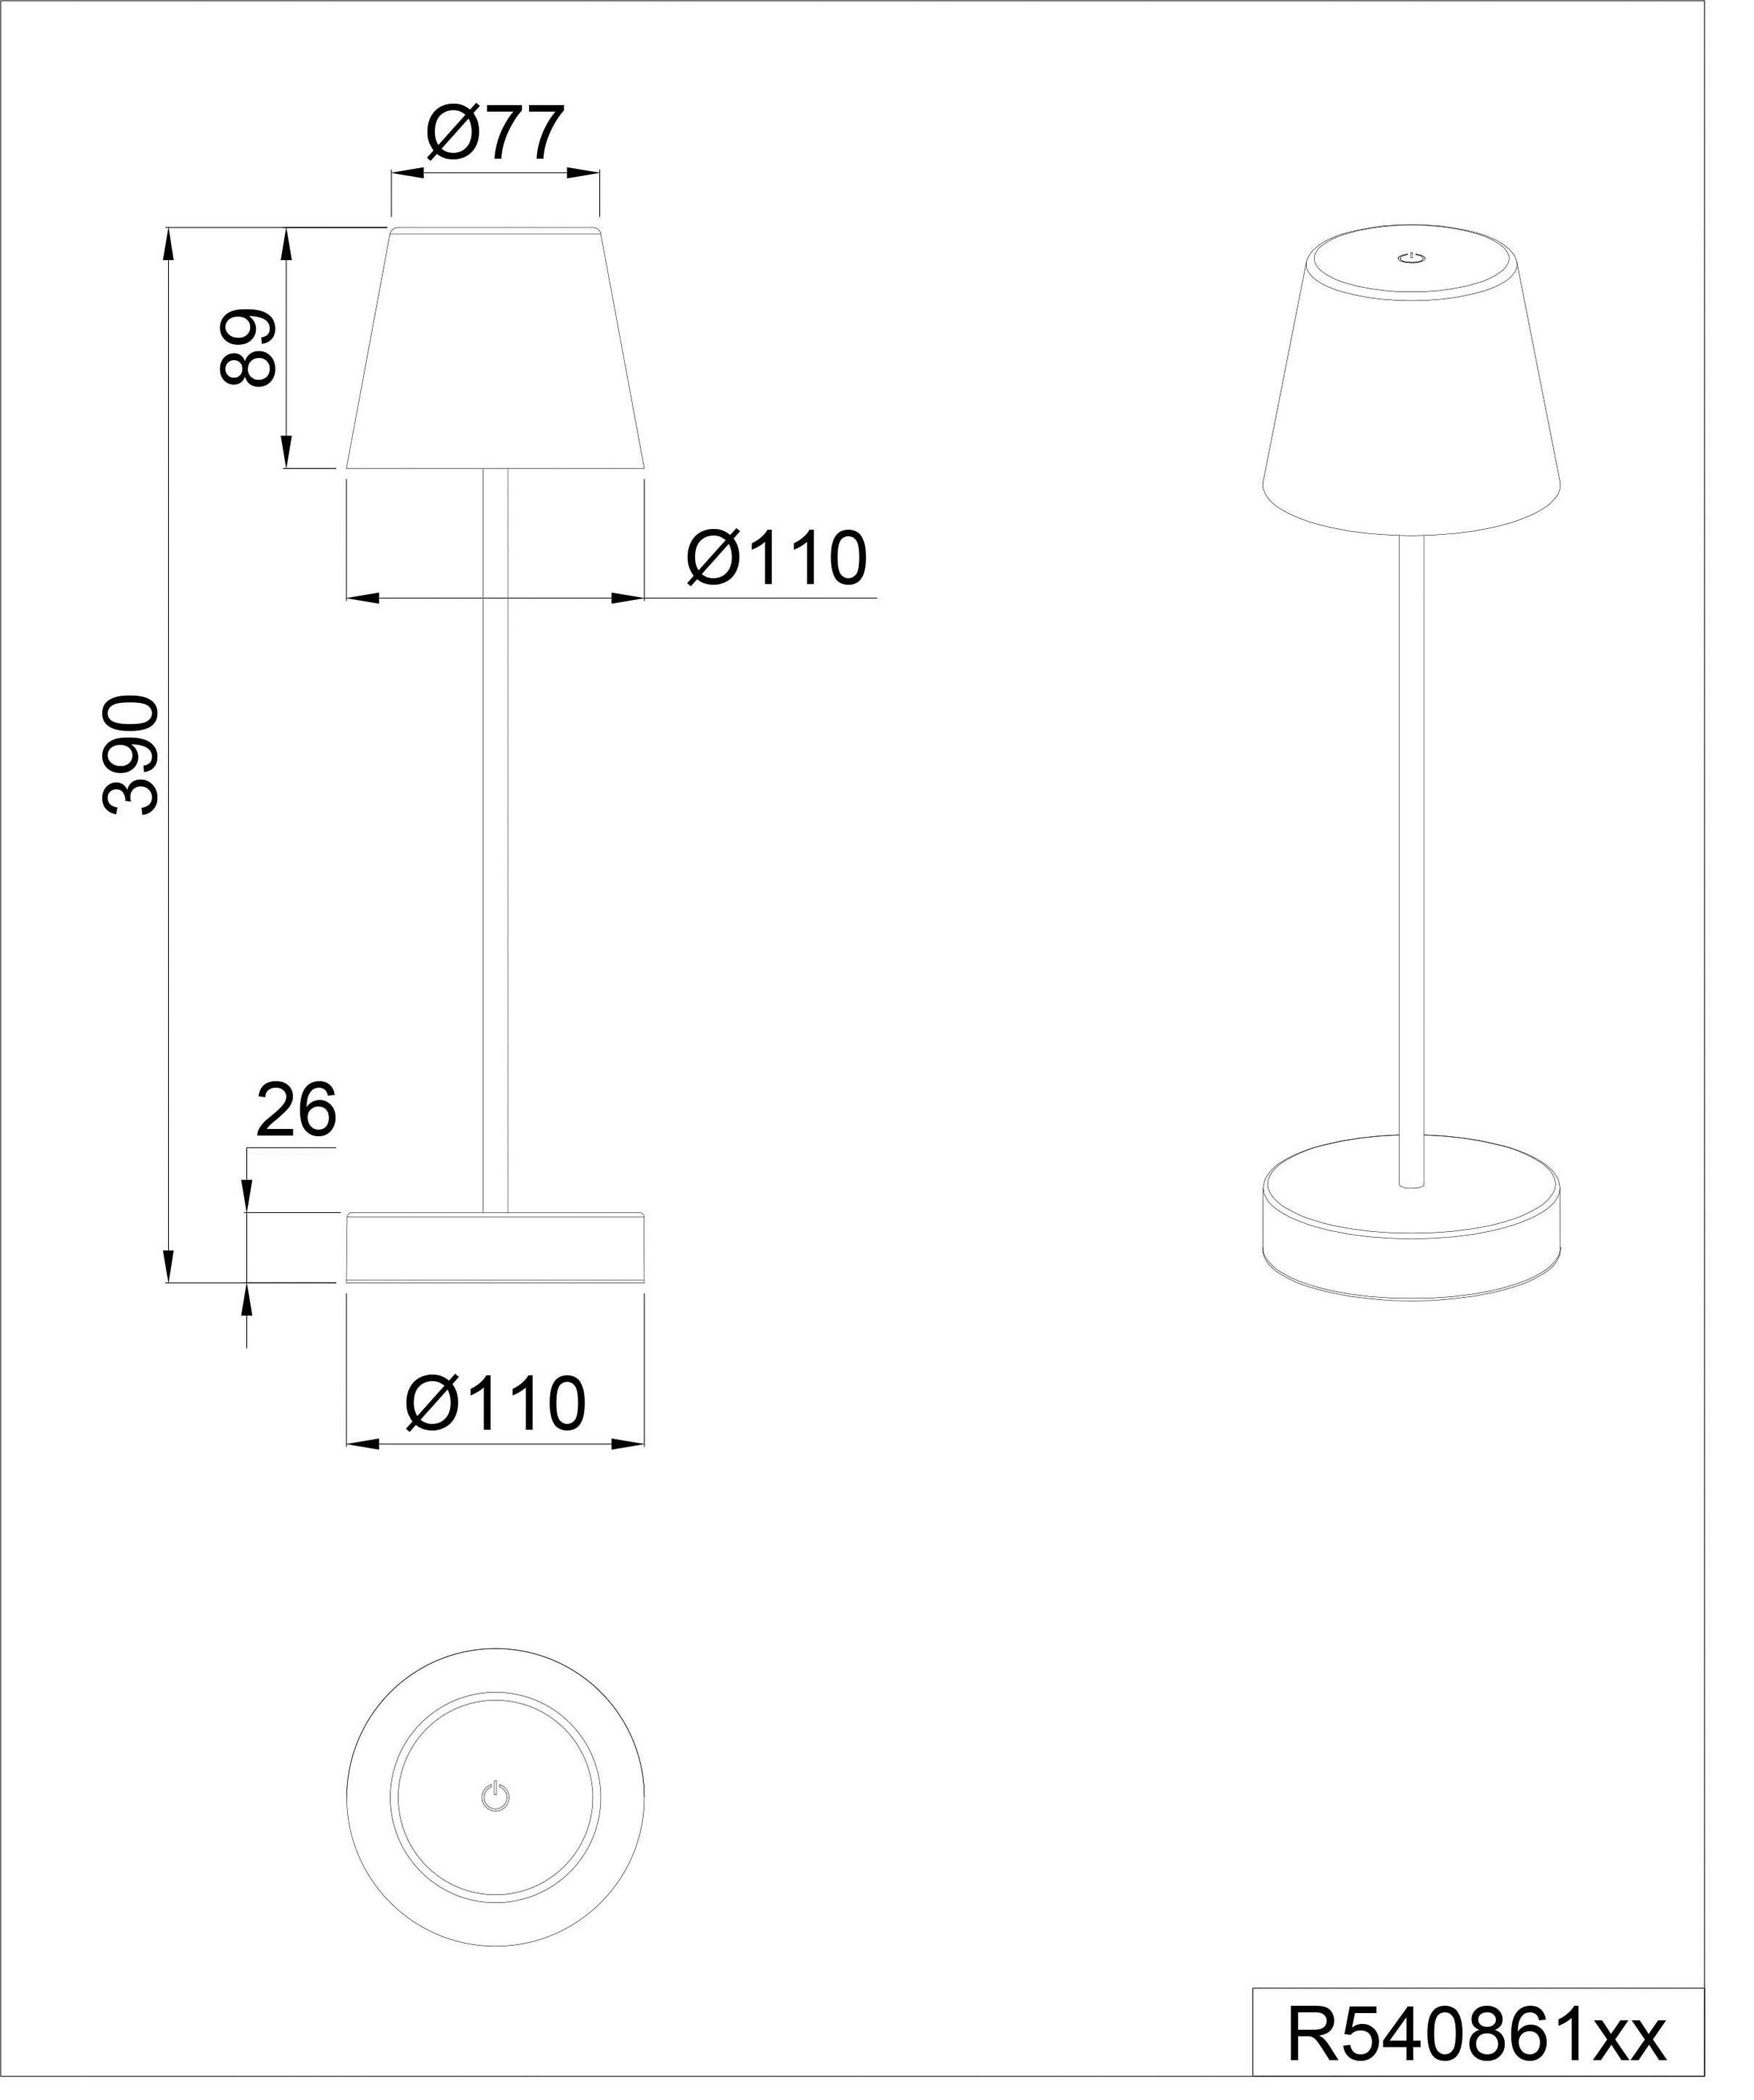 TRIO Leuchten LED Außen-Tischleuchte »Martinez«, 1 flammig-flammig, Touch Tischlampe dimmbar Lichtfarbe einstellbar, Akku, USB-C Anschluss